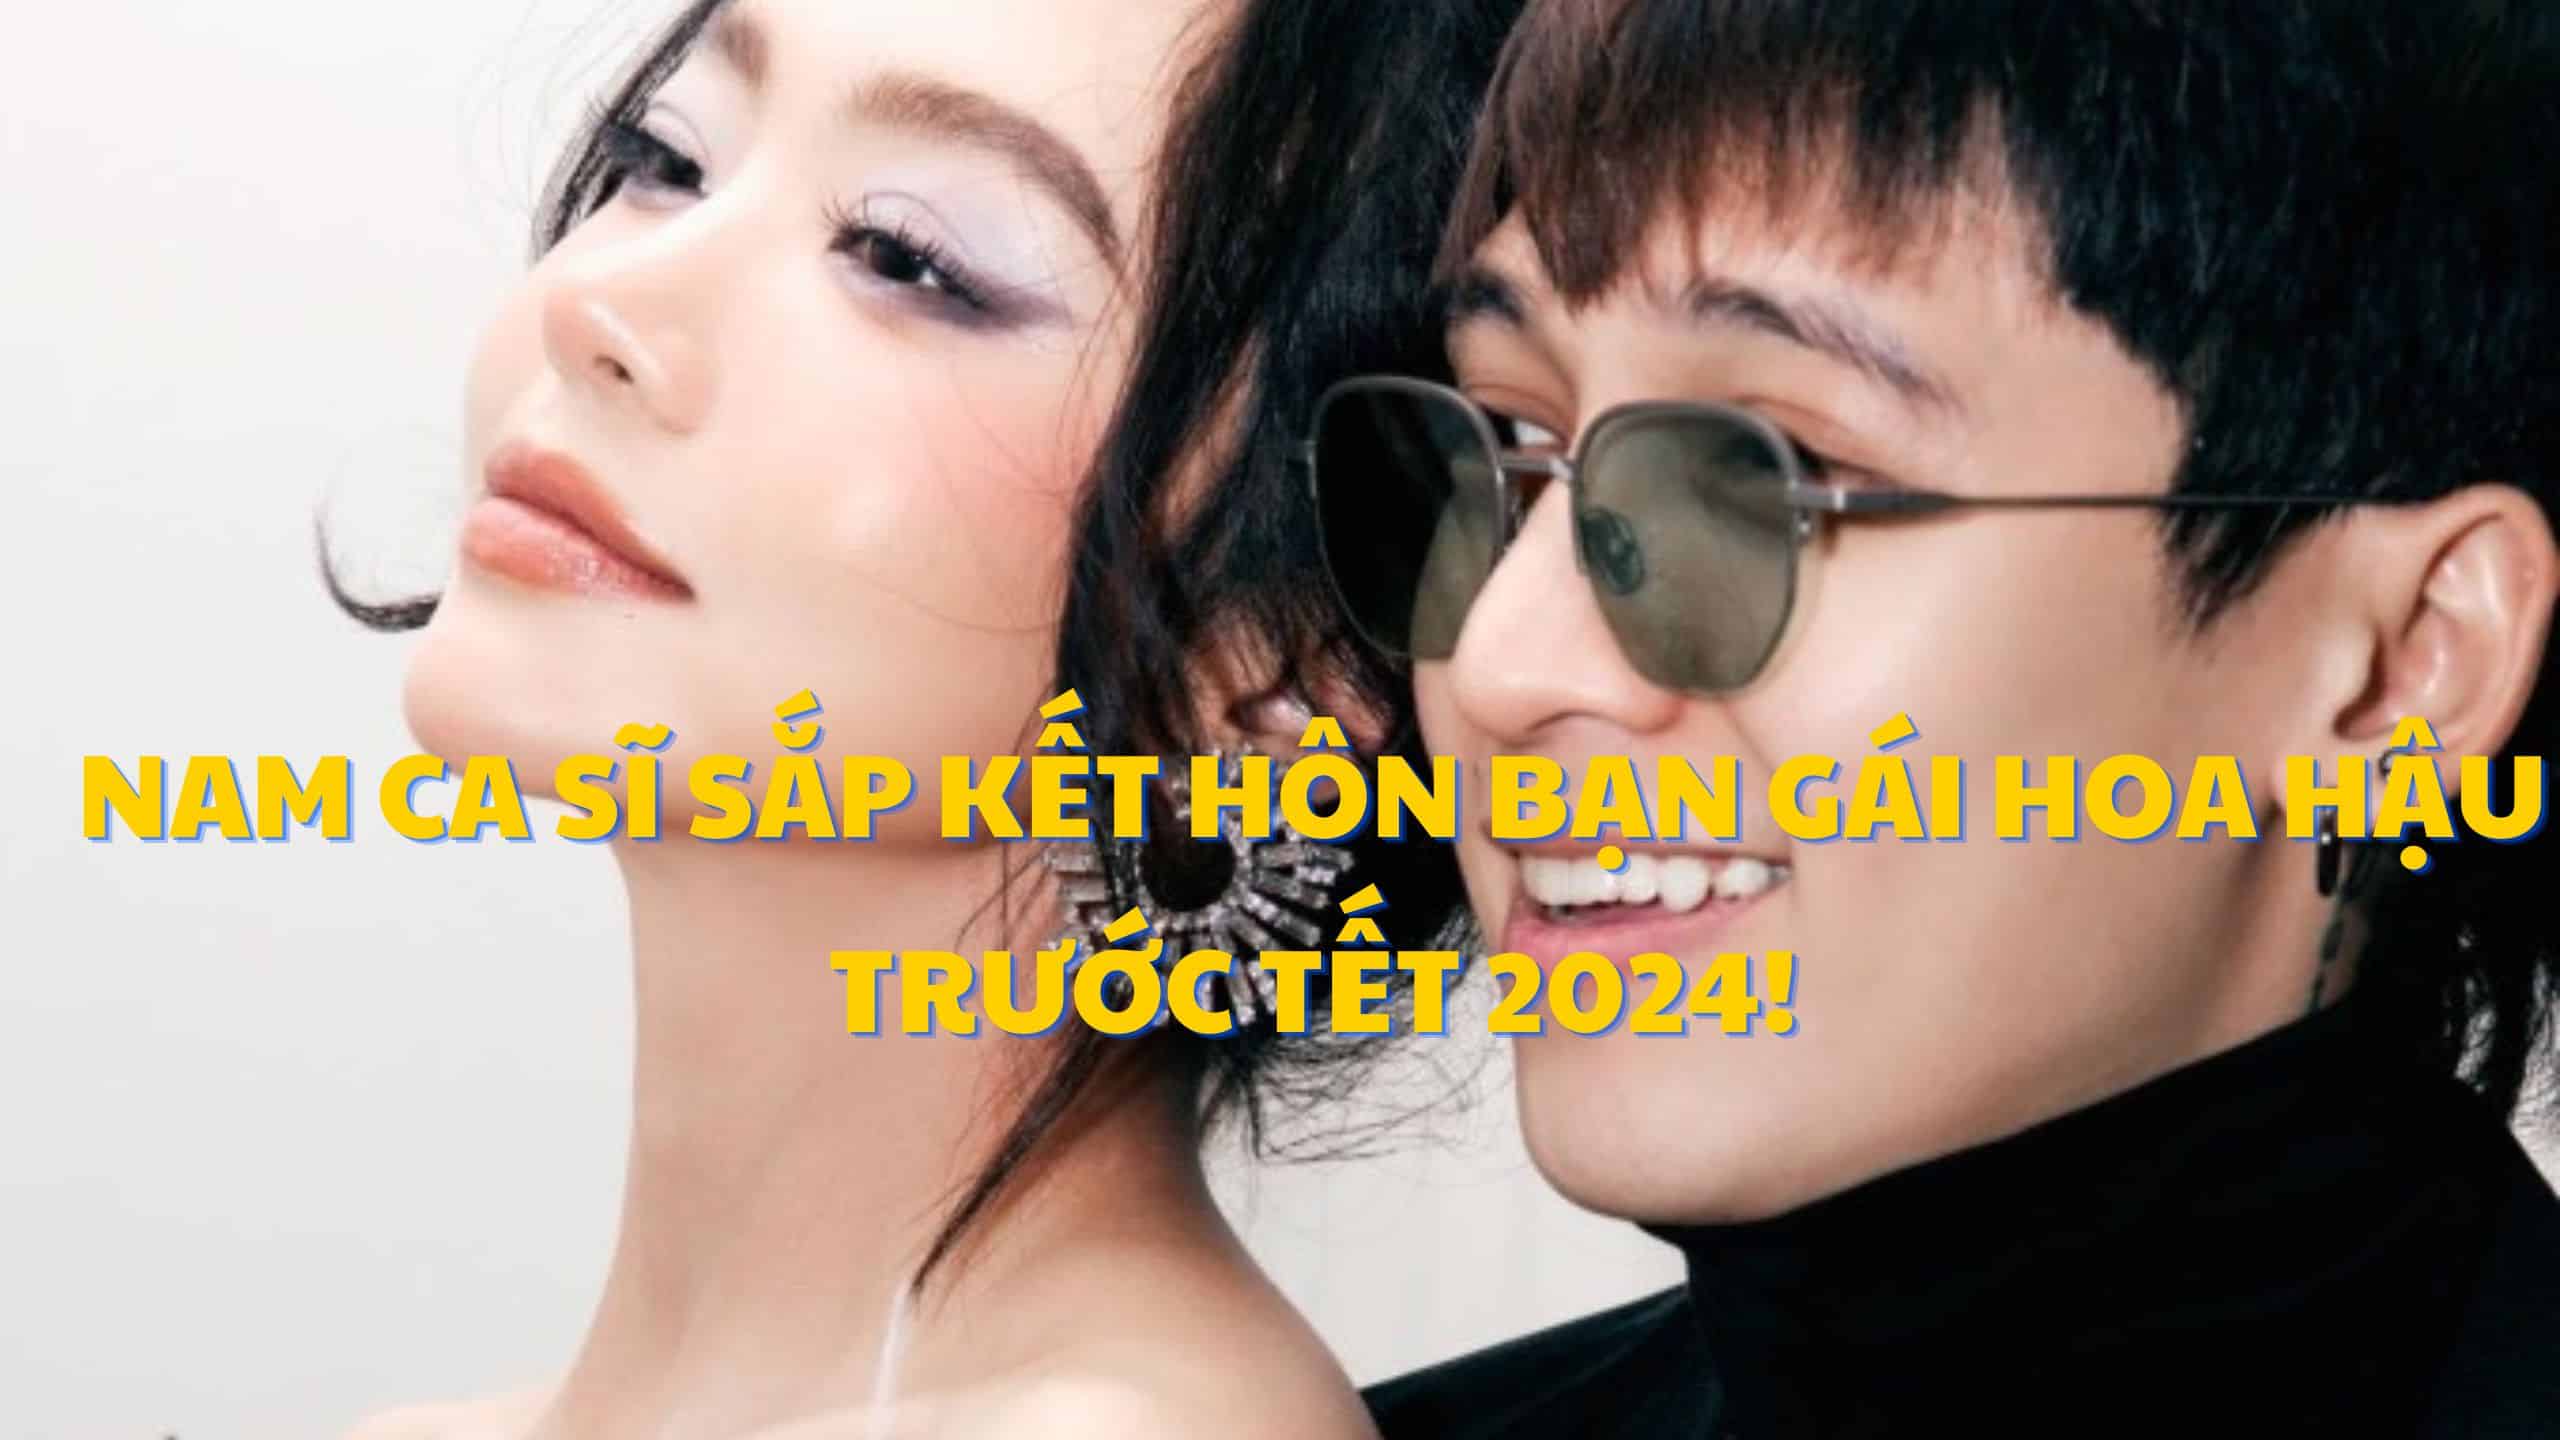 Một cặp đôi Vbiz lộ thiệp cưới: Nam ca sĩ sắp kết hôn bạn gái Hoa hậu trước Tết 2024!